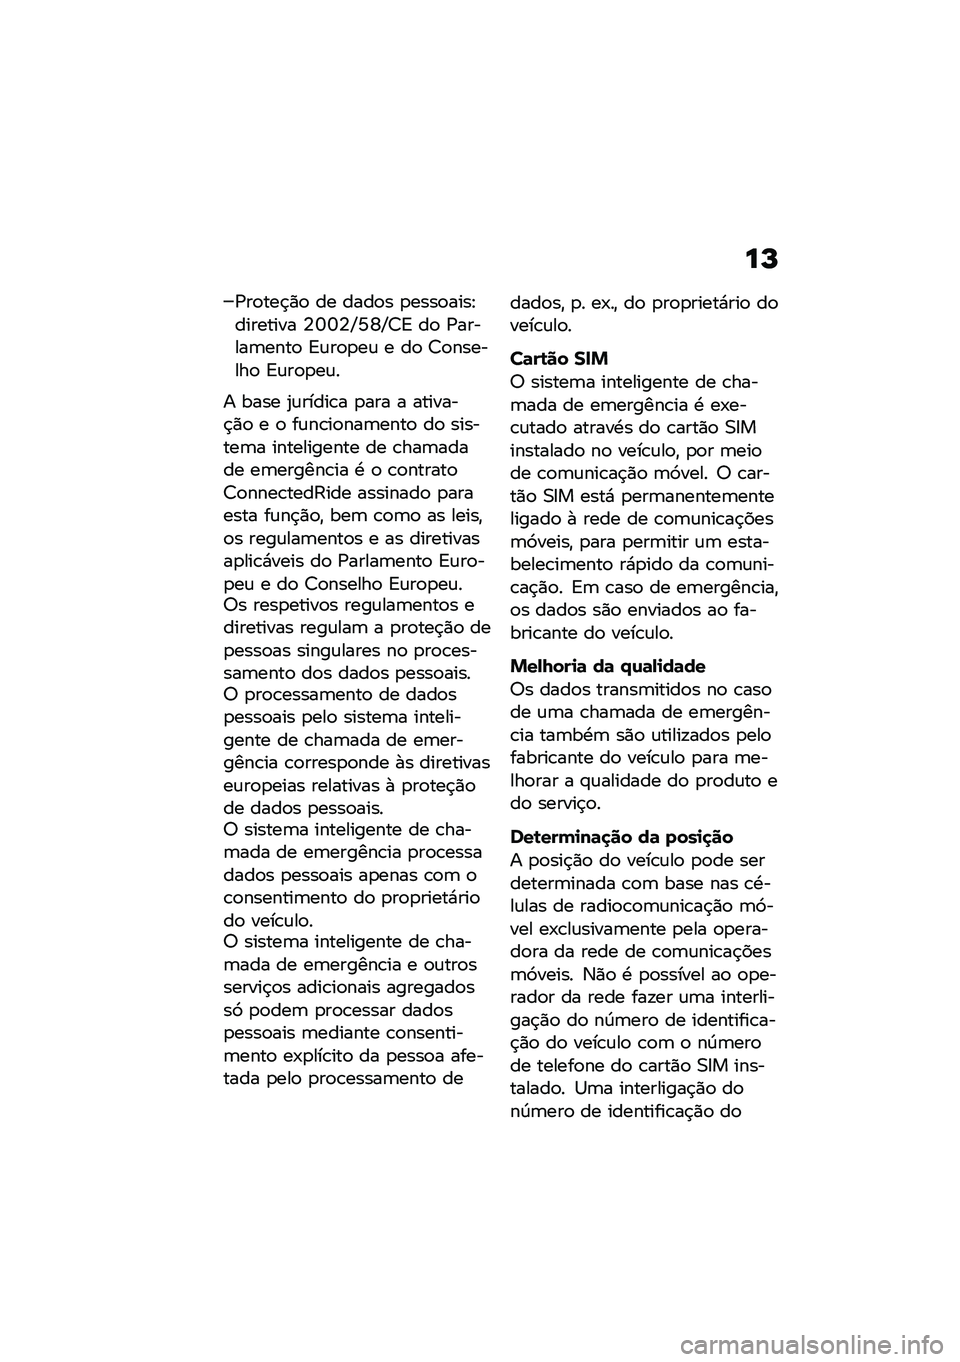 BMW MOTORRAD F 850 GS 2021  Manual do condutor (in Portuguese) ��P
�/��
���$�)�
 �� ����
� �
����
����E�������� �4�U�U�4�P�N�W�P�7�= ��
 �/������	����
 �=�\f��
�
��\f � ��
 �7�
�������
 �=�\f��
�
��\f�
� ���� �2�